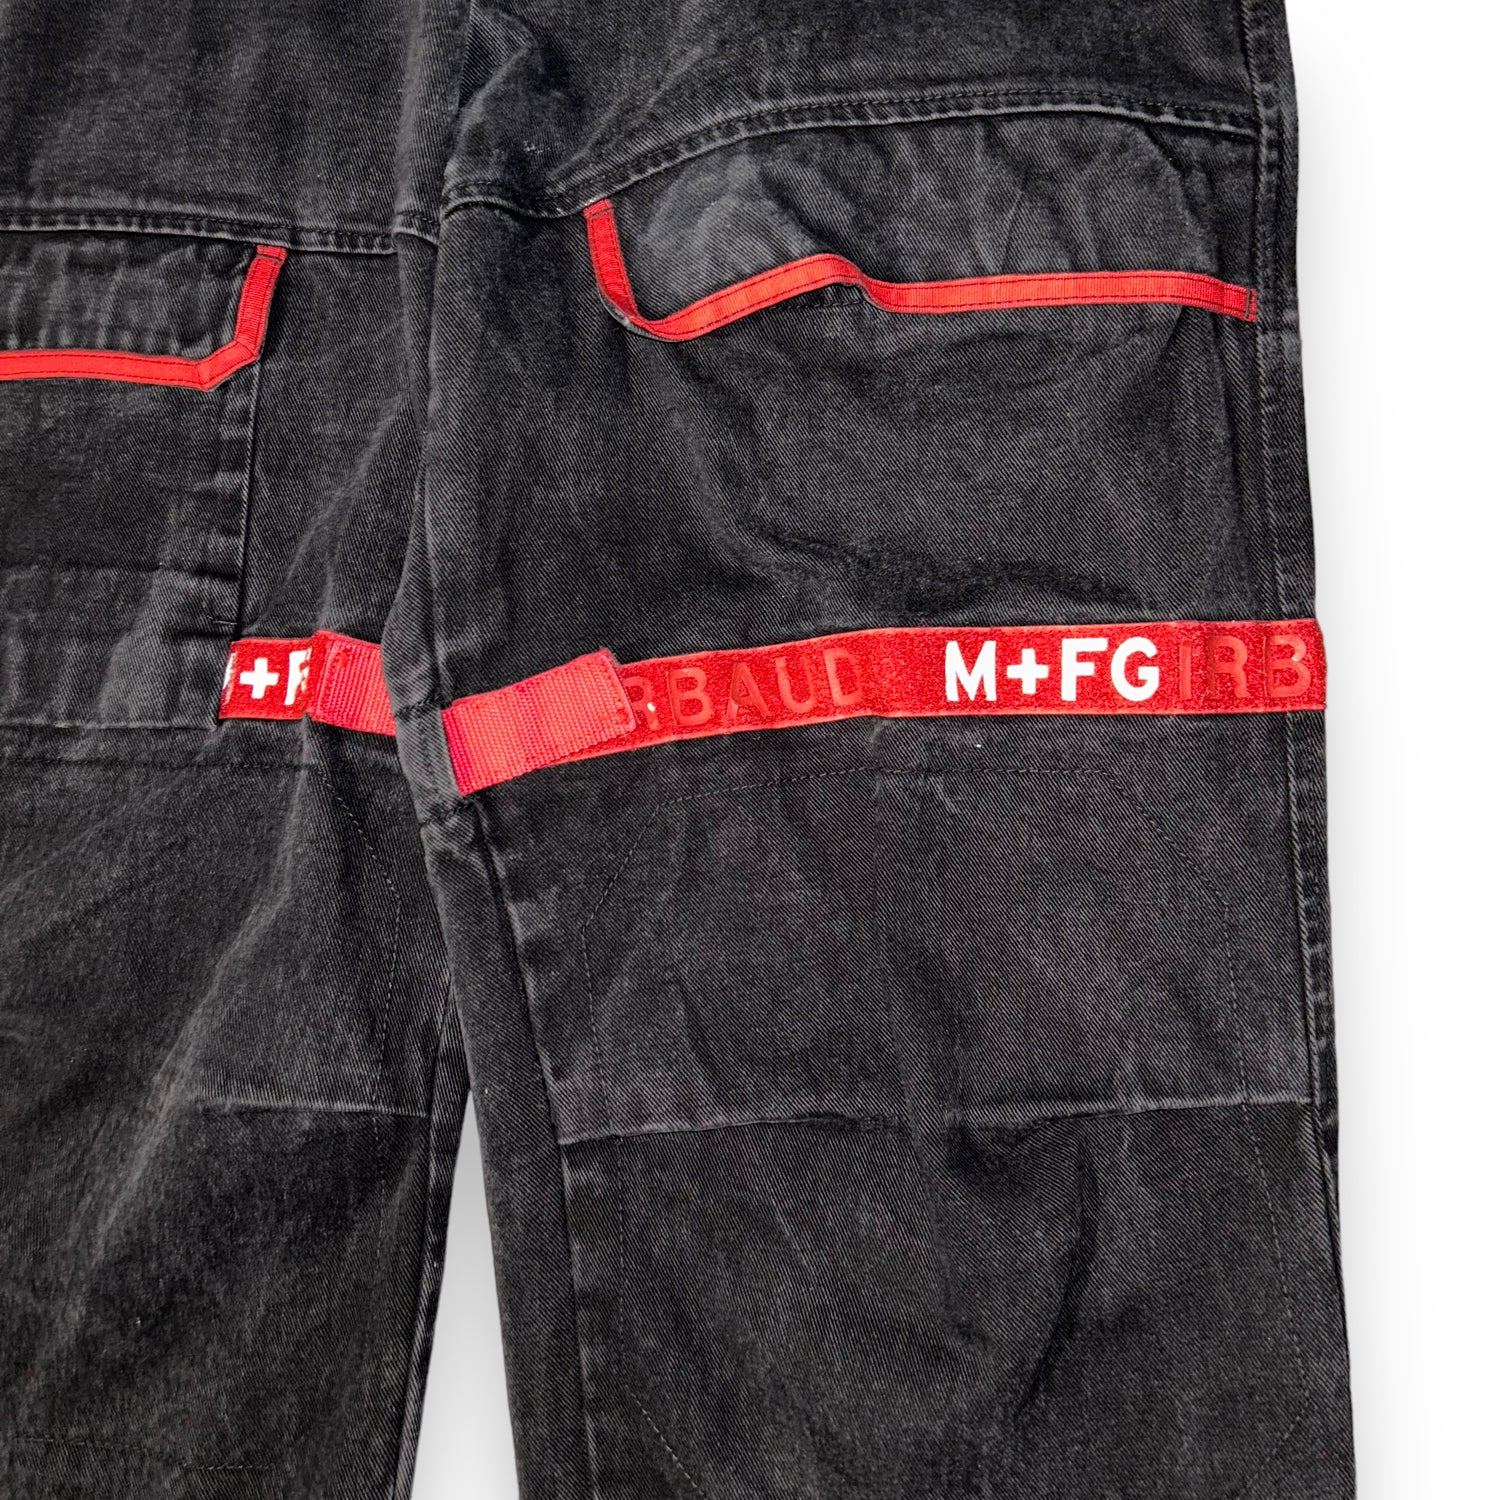 Baggy jeans MARTIRHÉ+FRANÇOIS+GIRBAUD  (36 USA  XL)